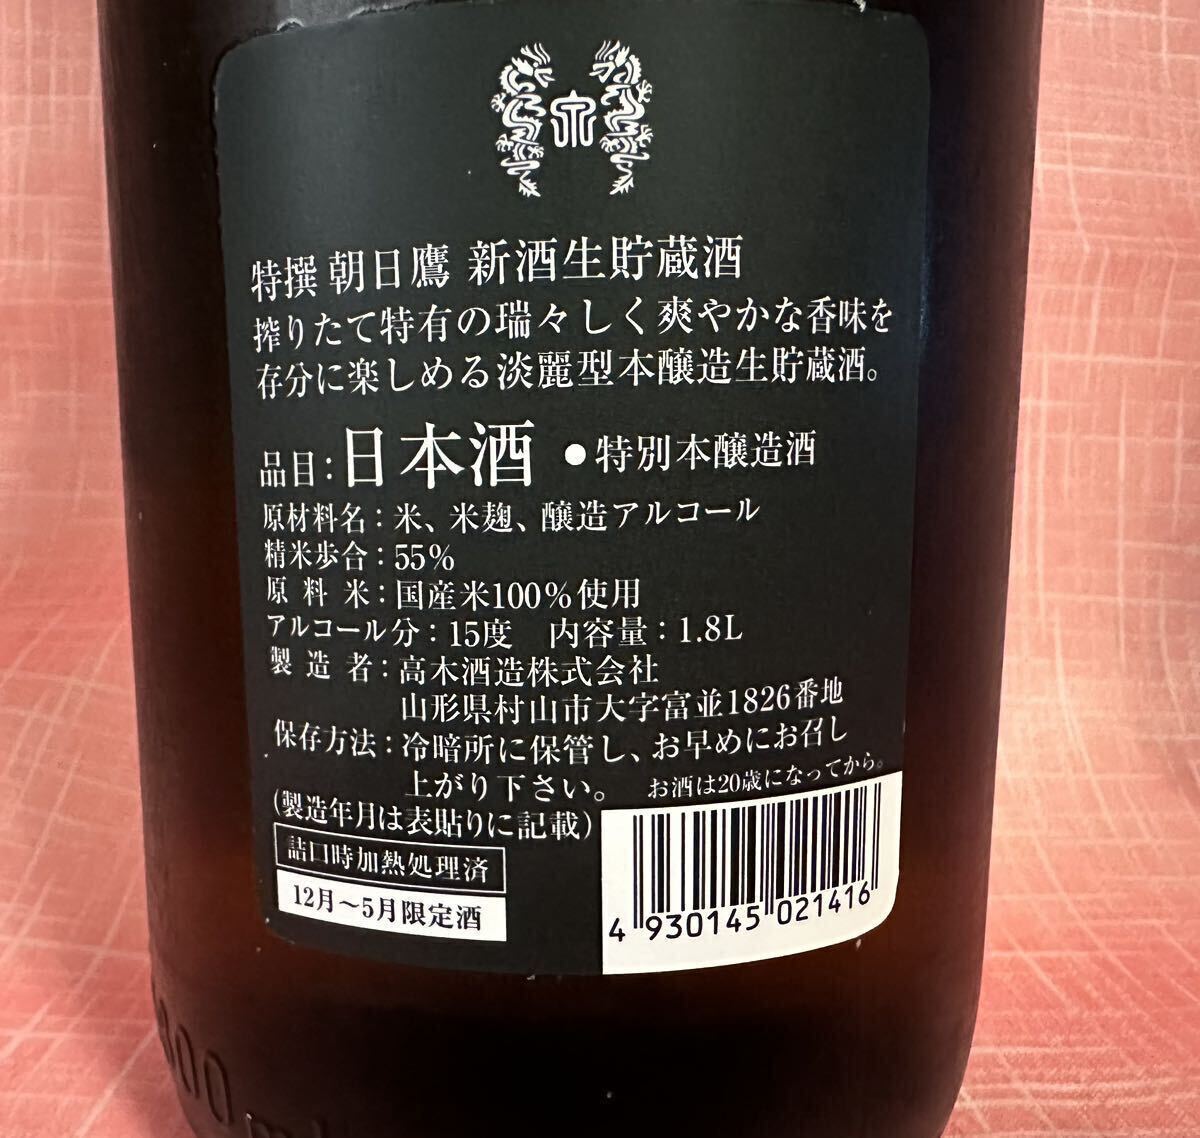  Special . утро день ястреб новый sake сырой . магазин sake 2024.4 высота дерево sake структура ②